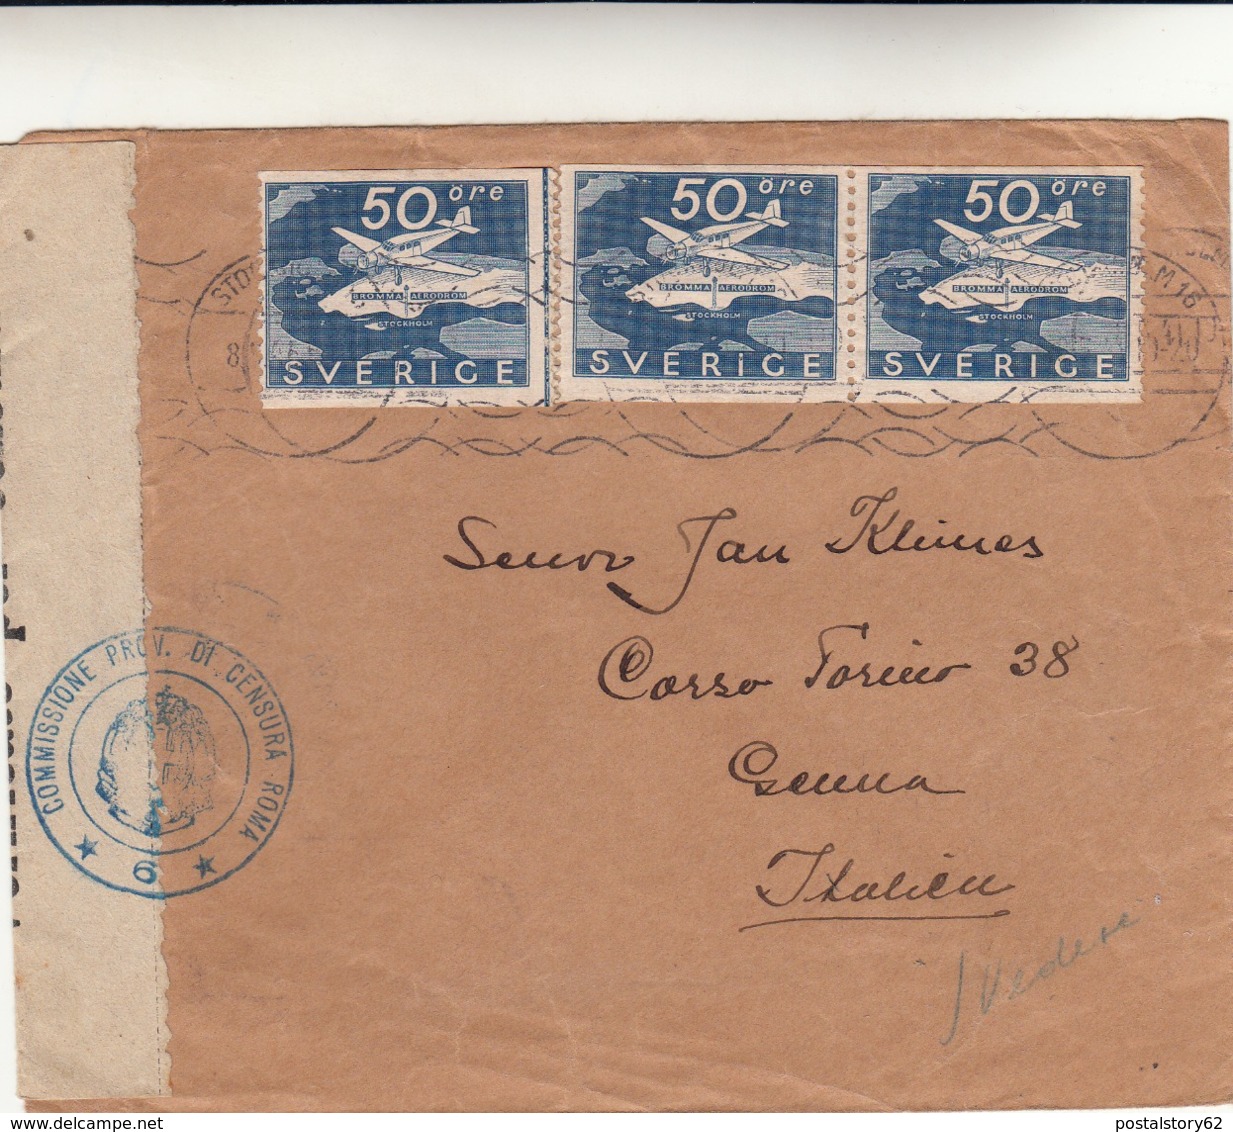 Svezia  Cover Per Genova Vari Timbri Di Censura - 1920-1936 Francobolli In Bobina I